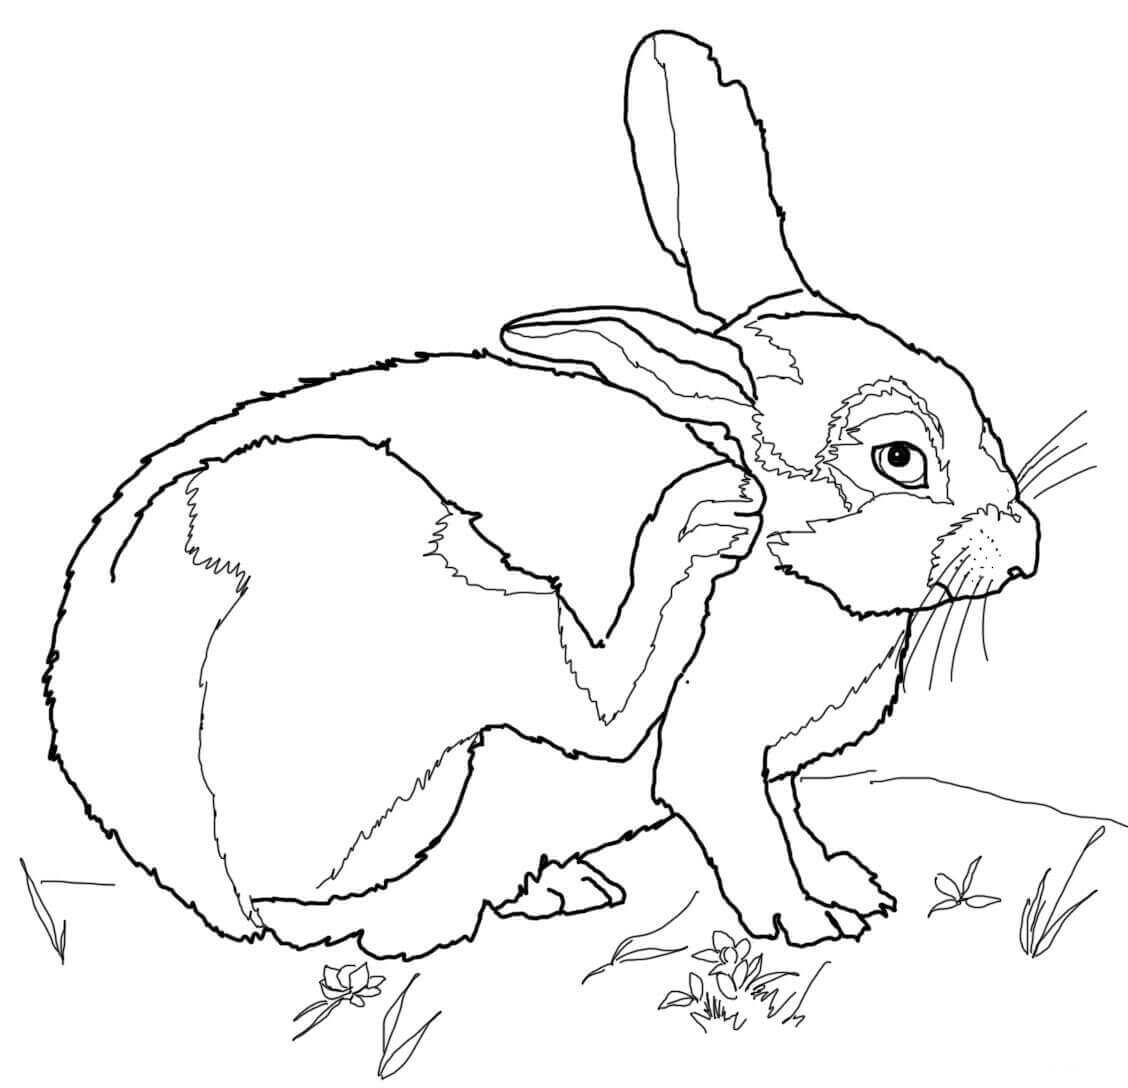 大棉尾兔从兔子身上抬起腿